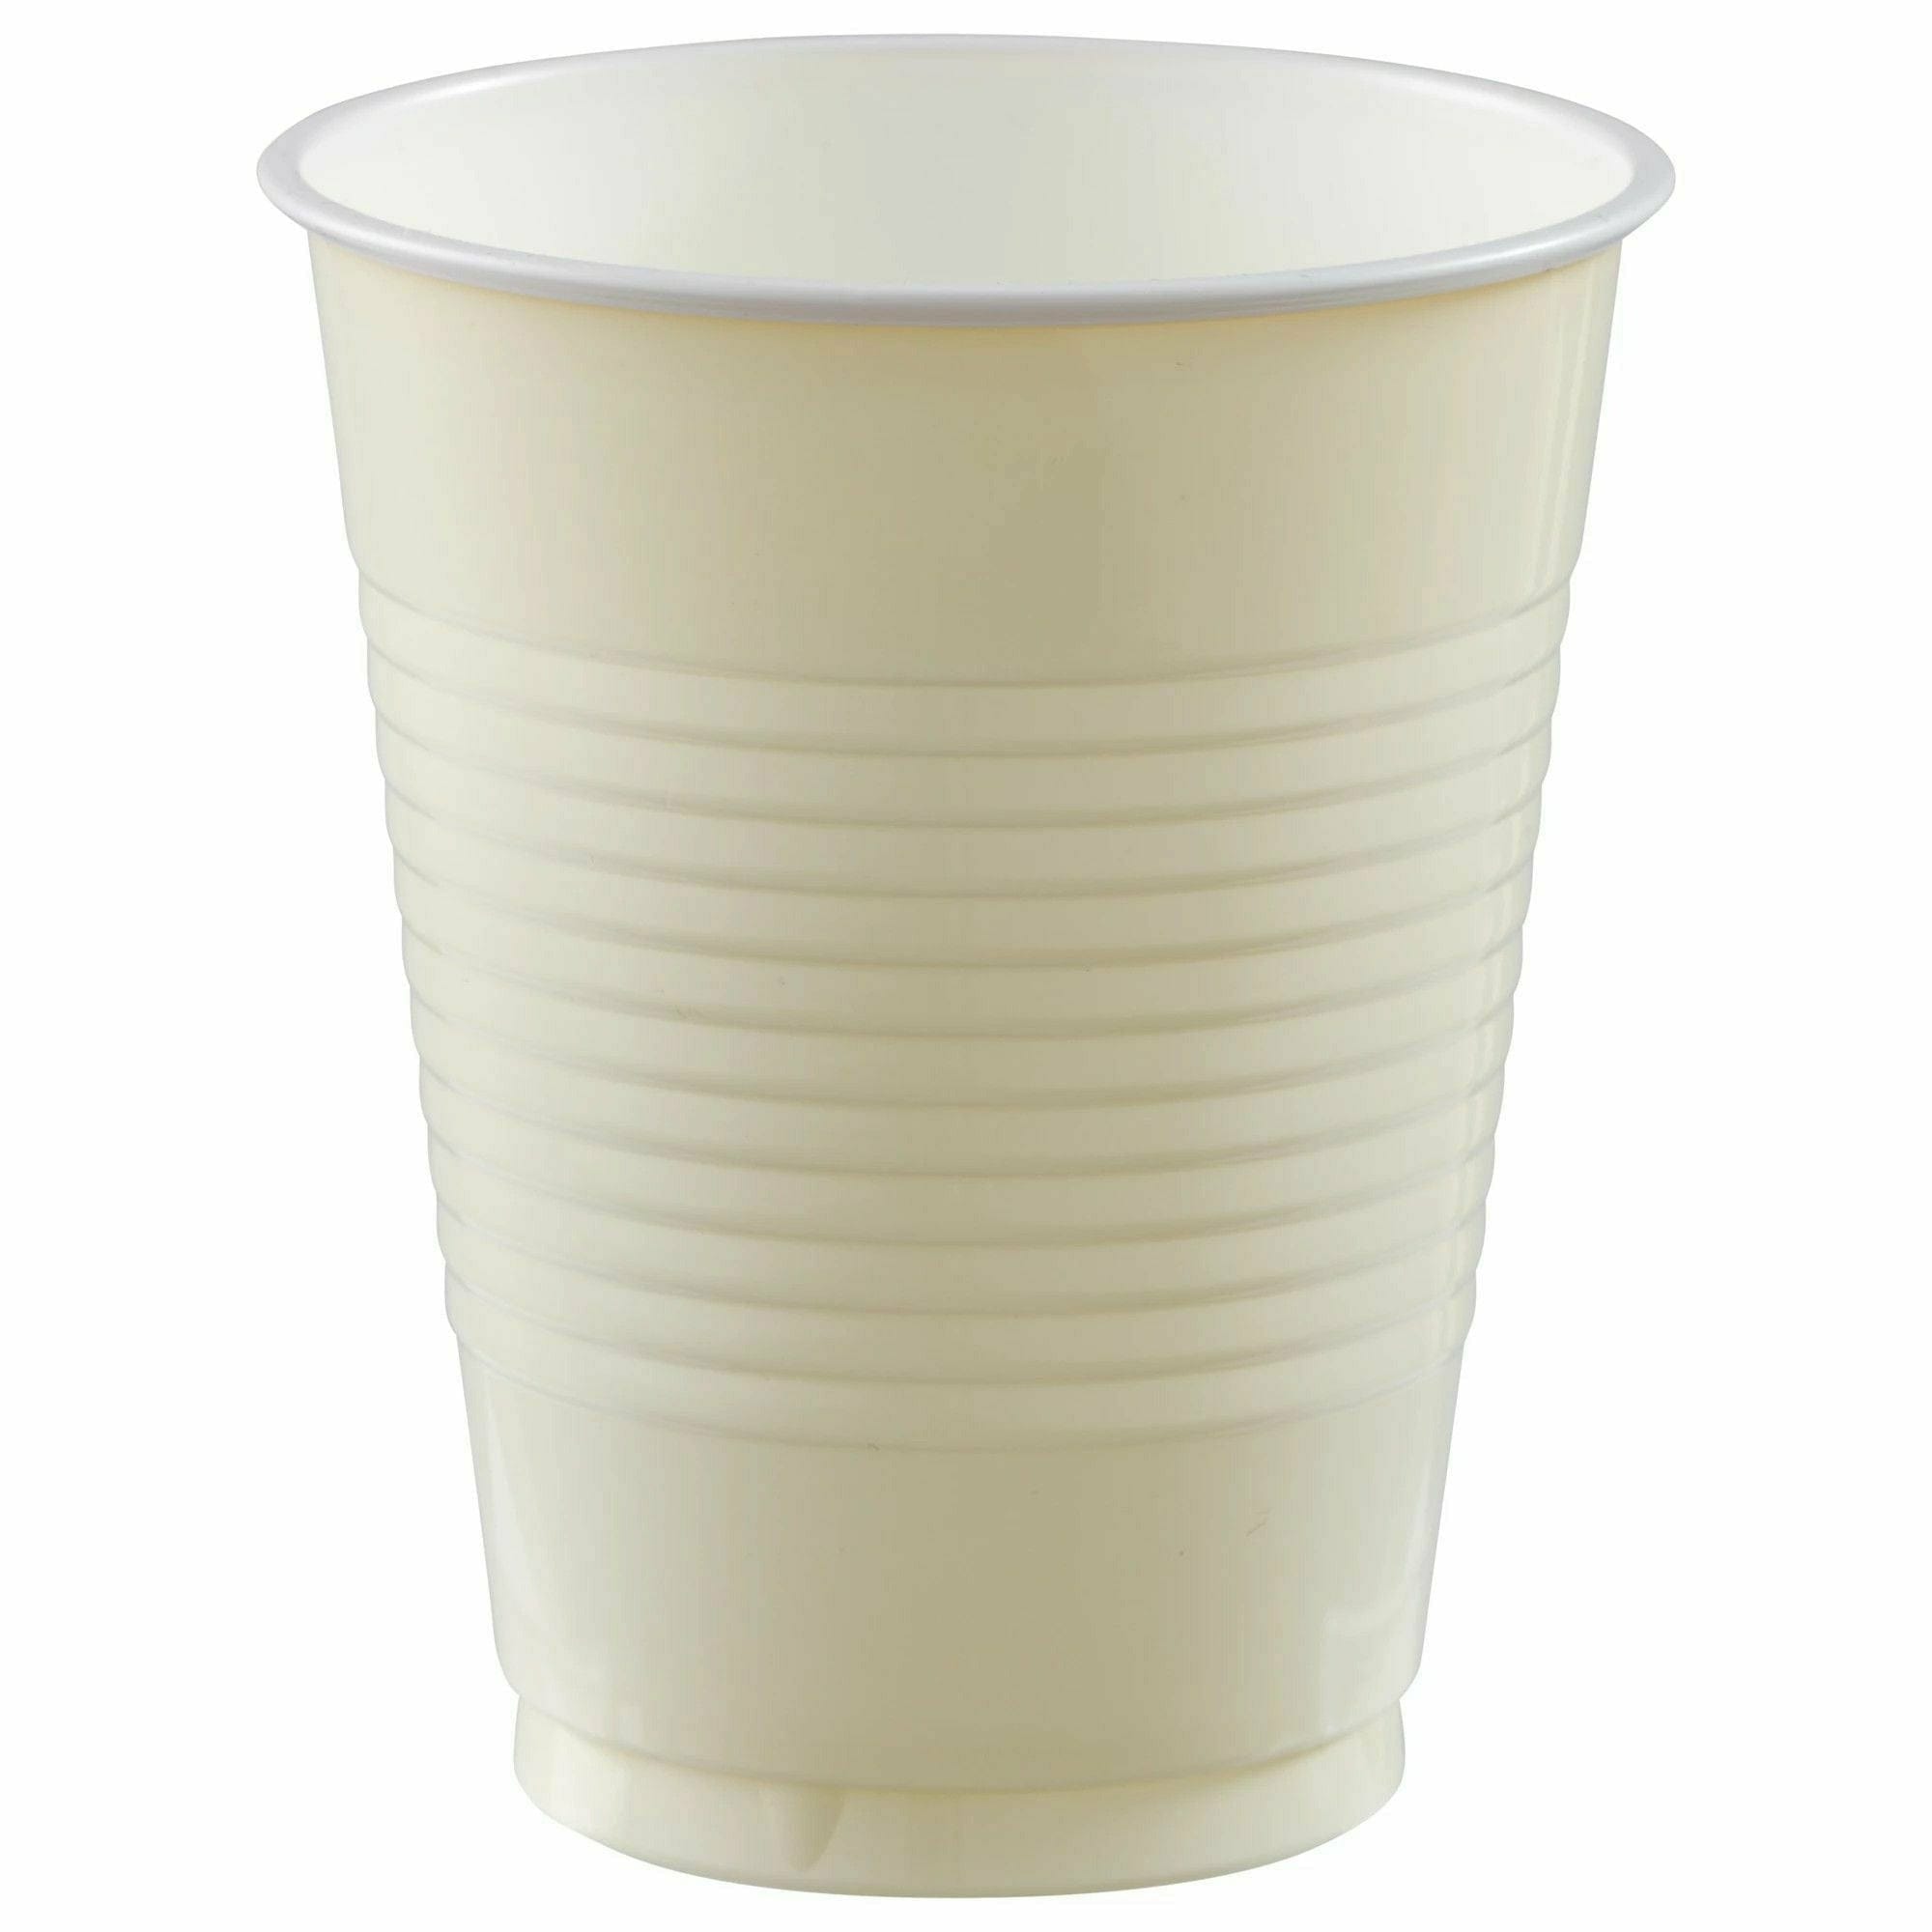 Vanilla Creme Plastic Cups (20 Count)